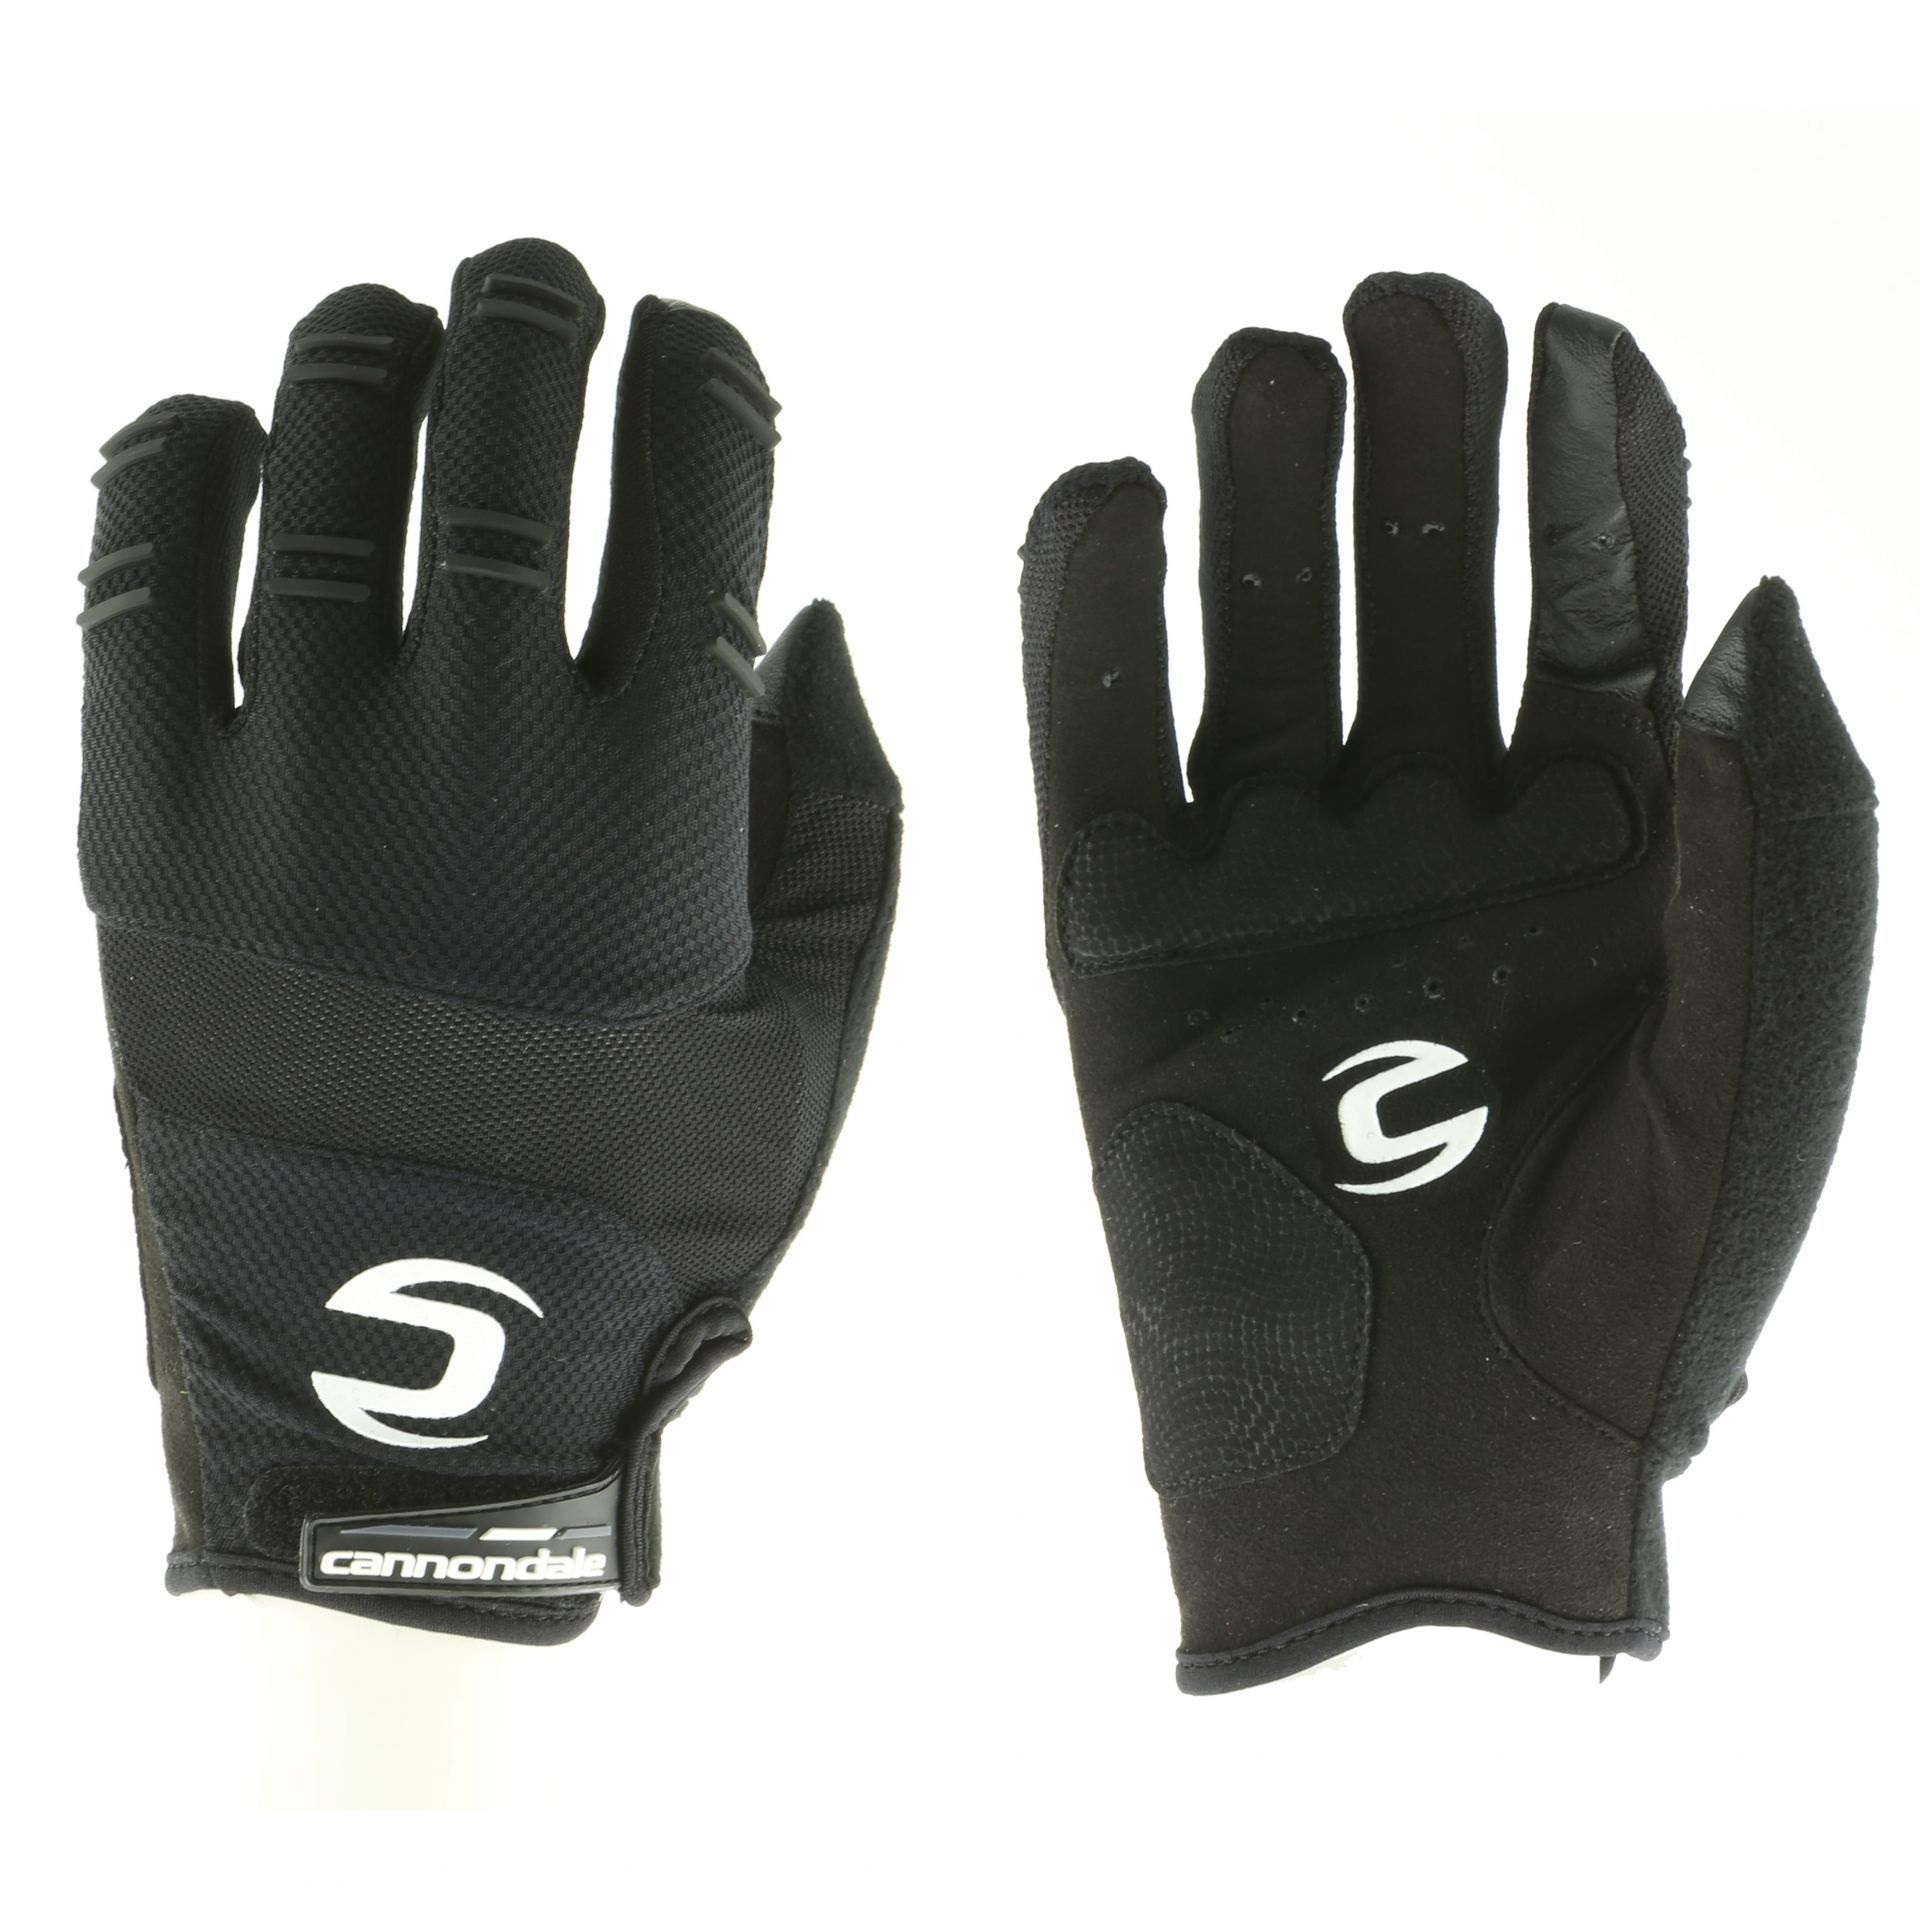 Перчатки с пальцами Cannondale Trail размер XL, чёрные фото 1